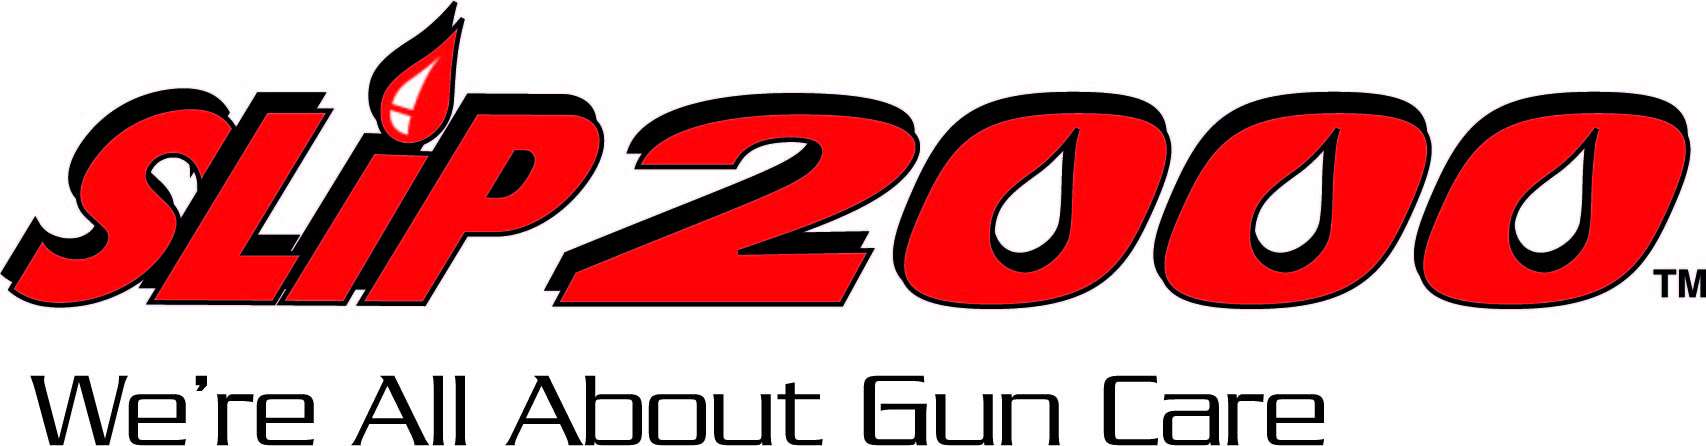 Slip2000 - Gun Care